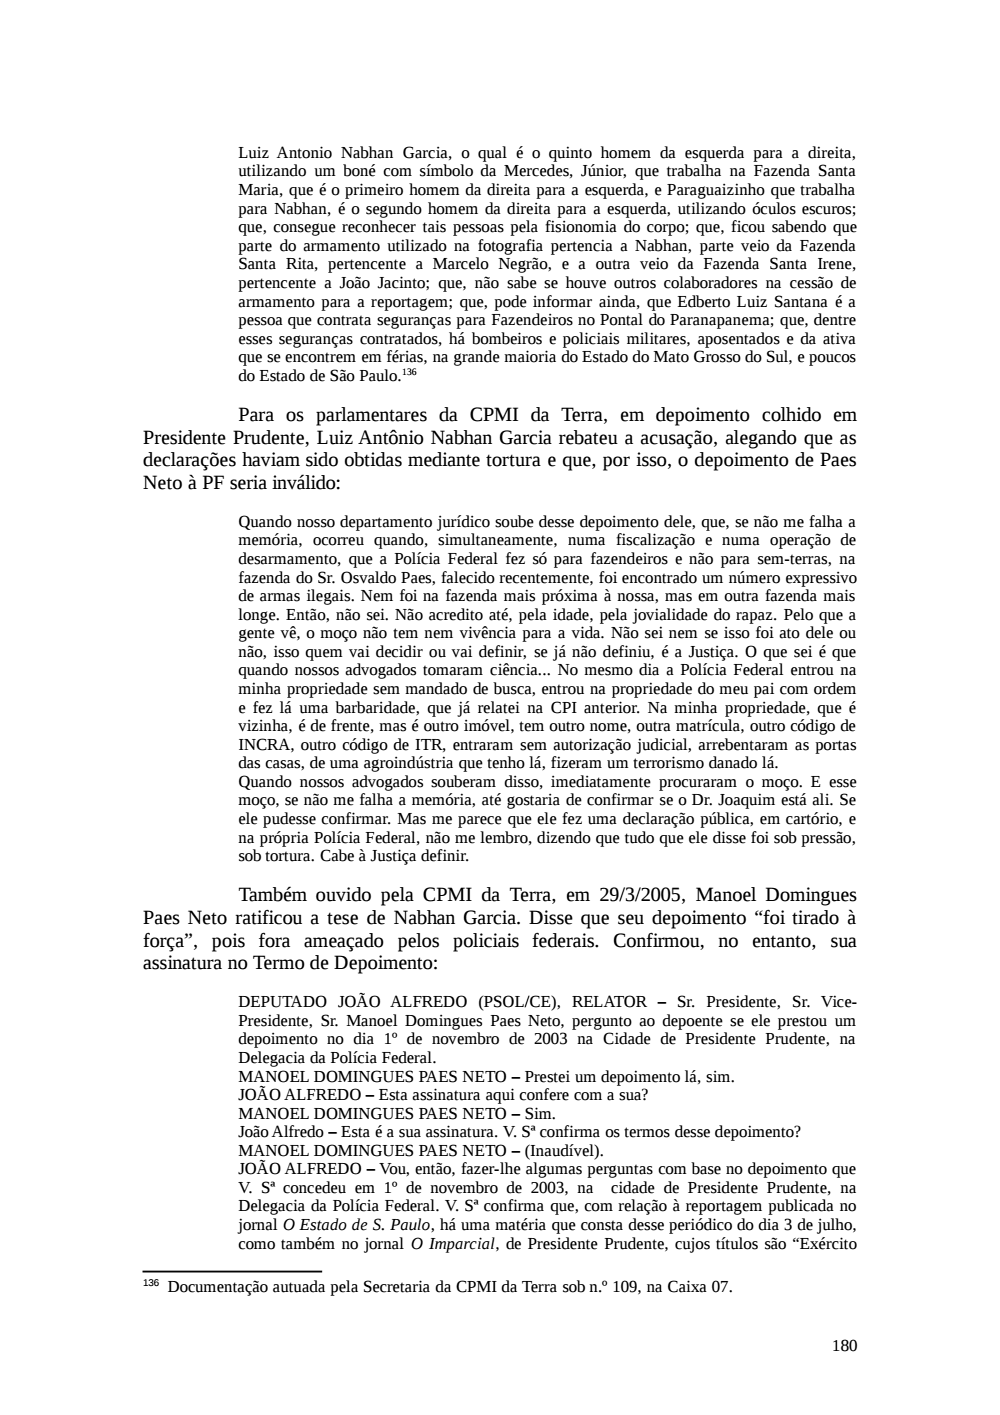 Page 180 from Relatório final da comissão